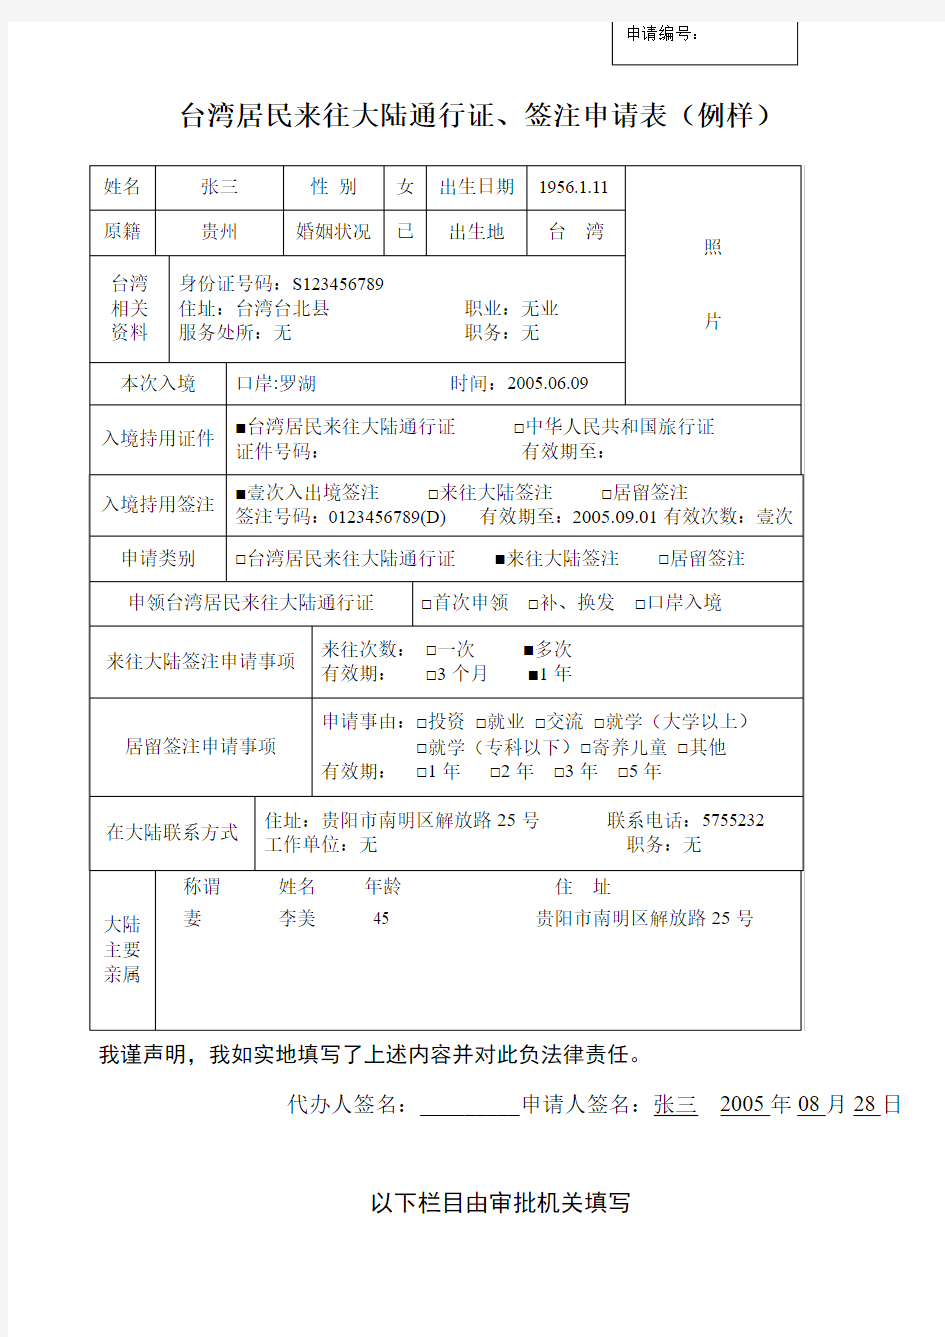 台湾居民来往大陆通行证、签注申请表(例样)